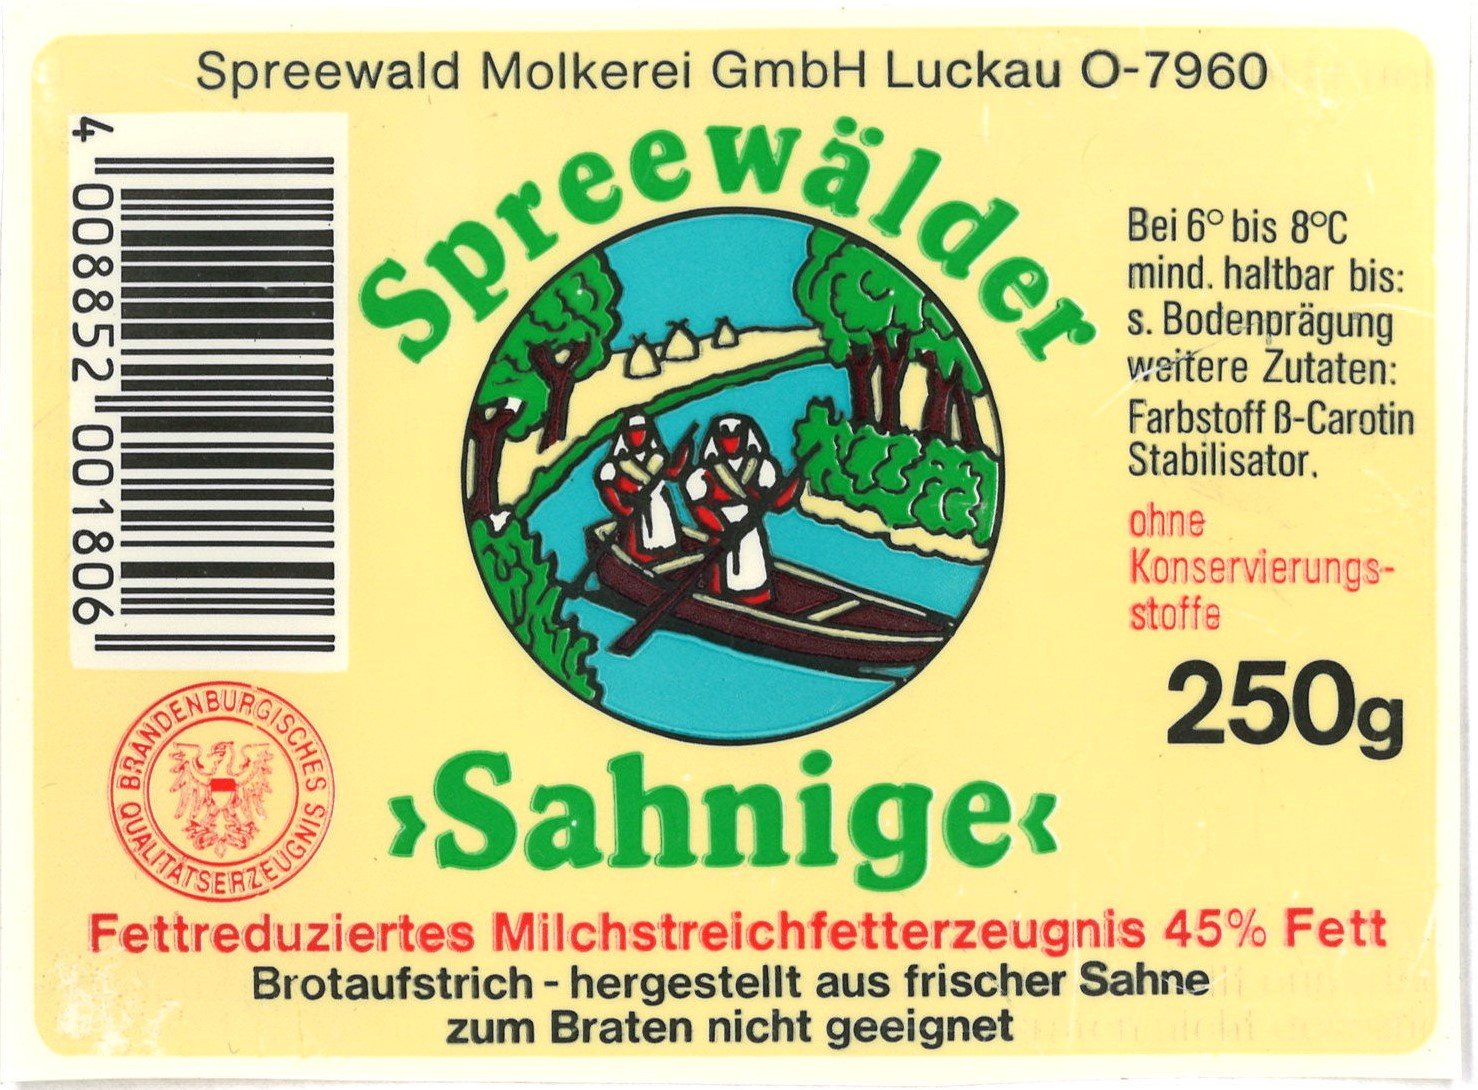 Luckau, Spreewald-Molkerei: Brotaufstrich "Spreewälder 'Sahnige'" (Landesgeschichtliche Vereinigung für die Mark Brandenburg e.V., Archiv CC BY)